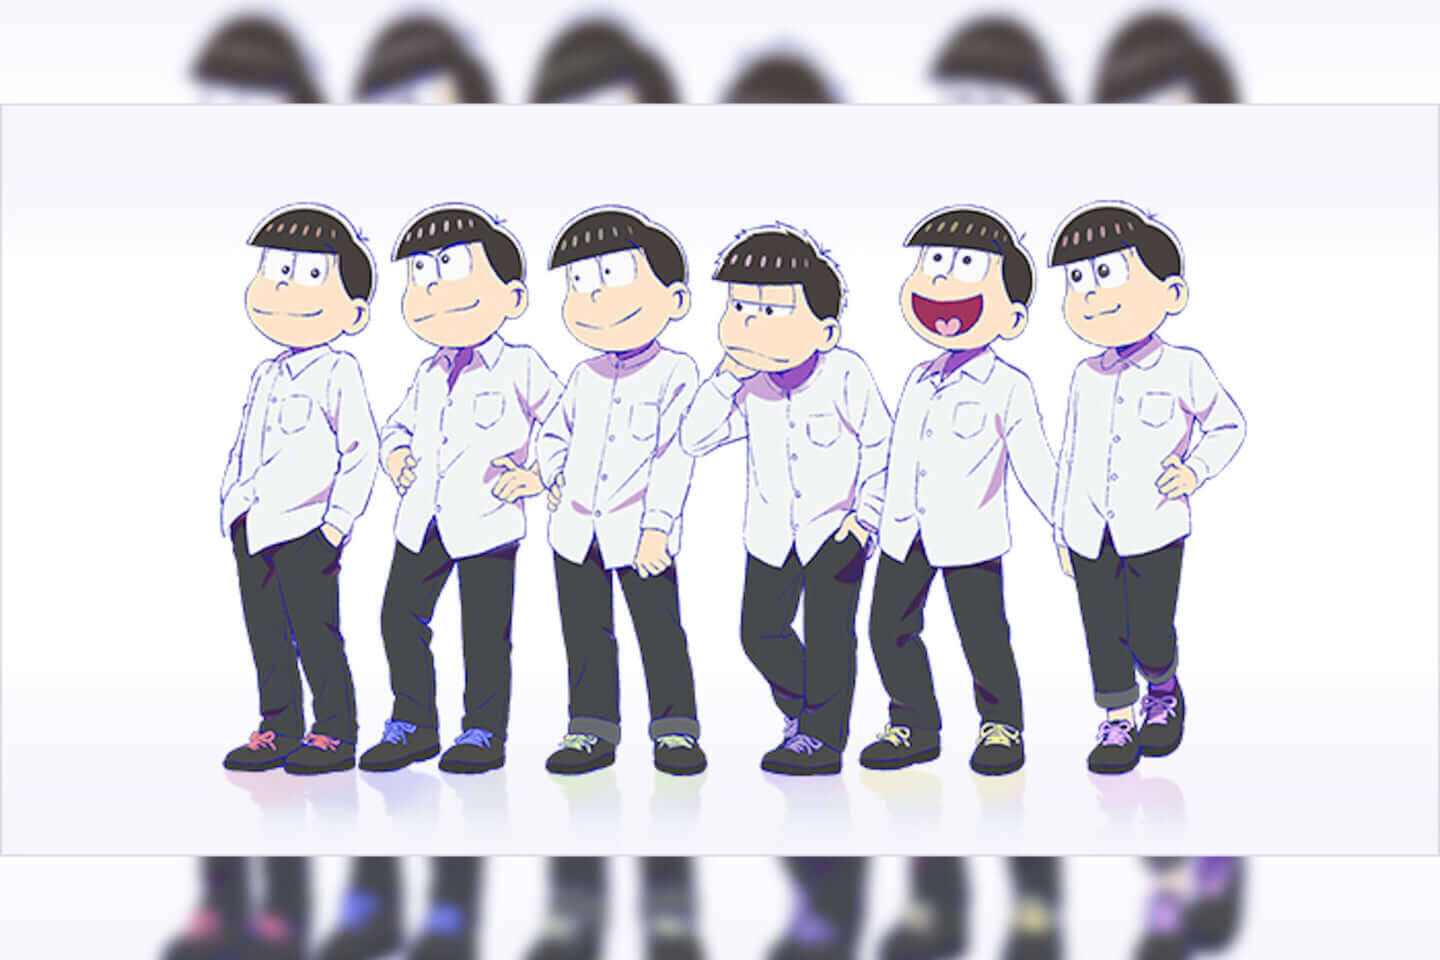 第3期放送決定のアニメ おそ松さん の6つ子がファンクラブを開設 6つ子からユニークなコメントも到着 年7月13日 エキサイトニュース